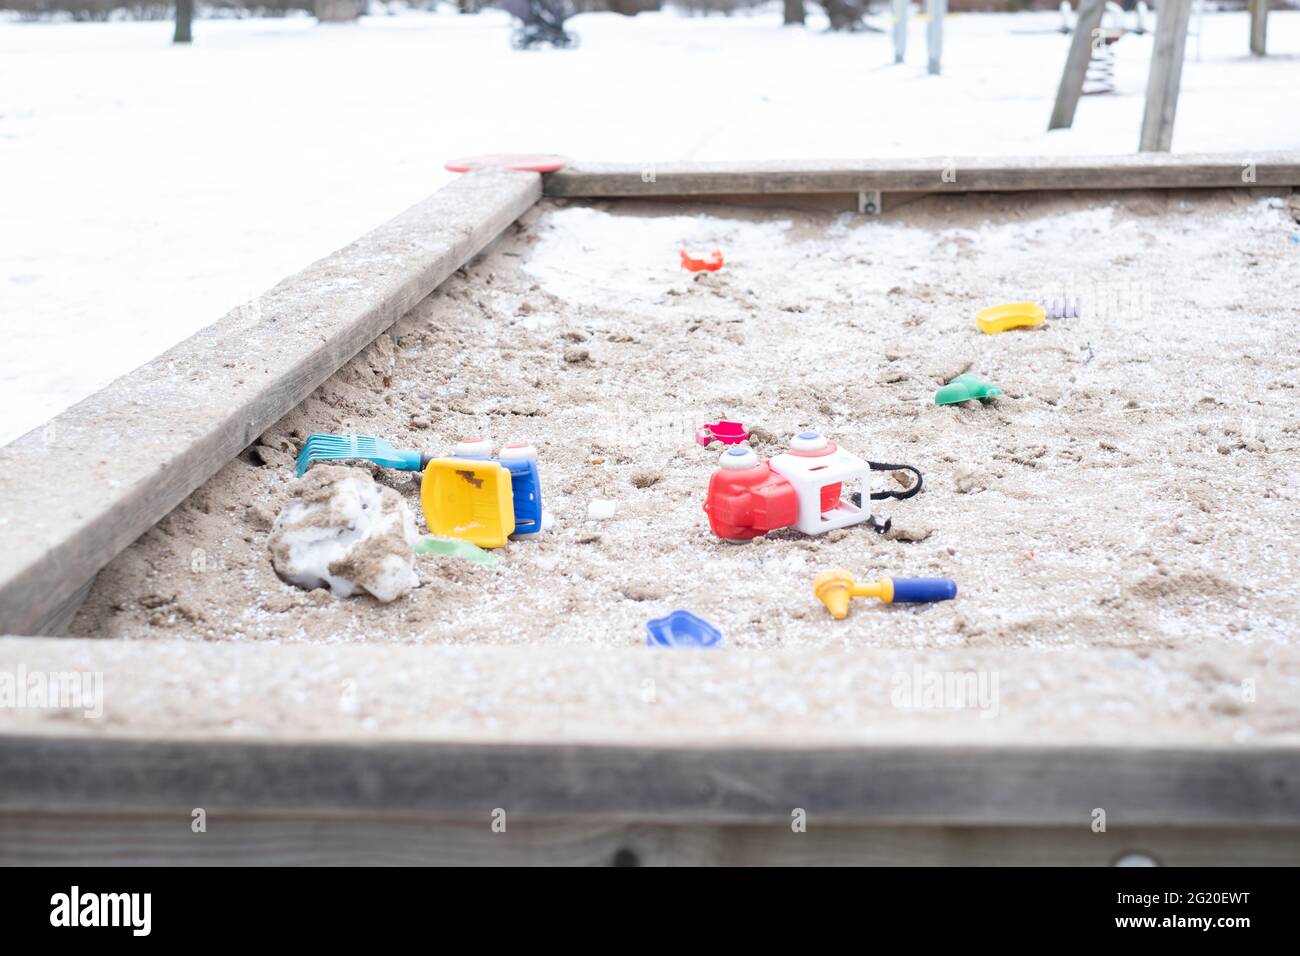 Kids toys scattered around in snowy frozen sandbox during winter lockdown. Stock Photo